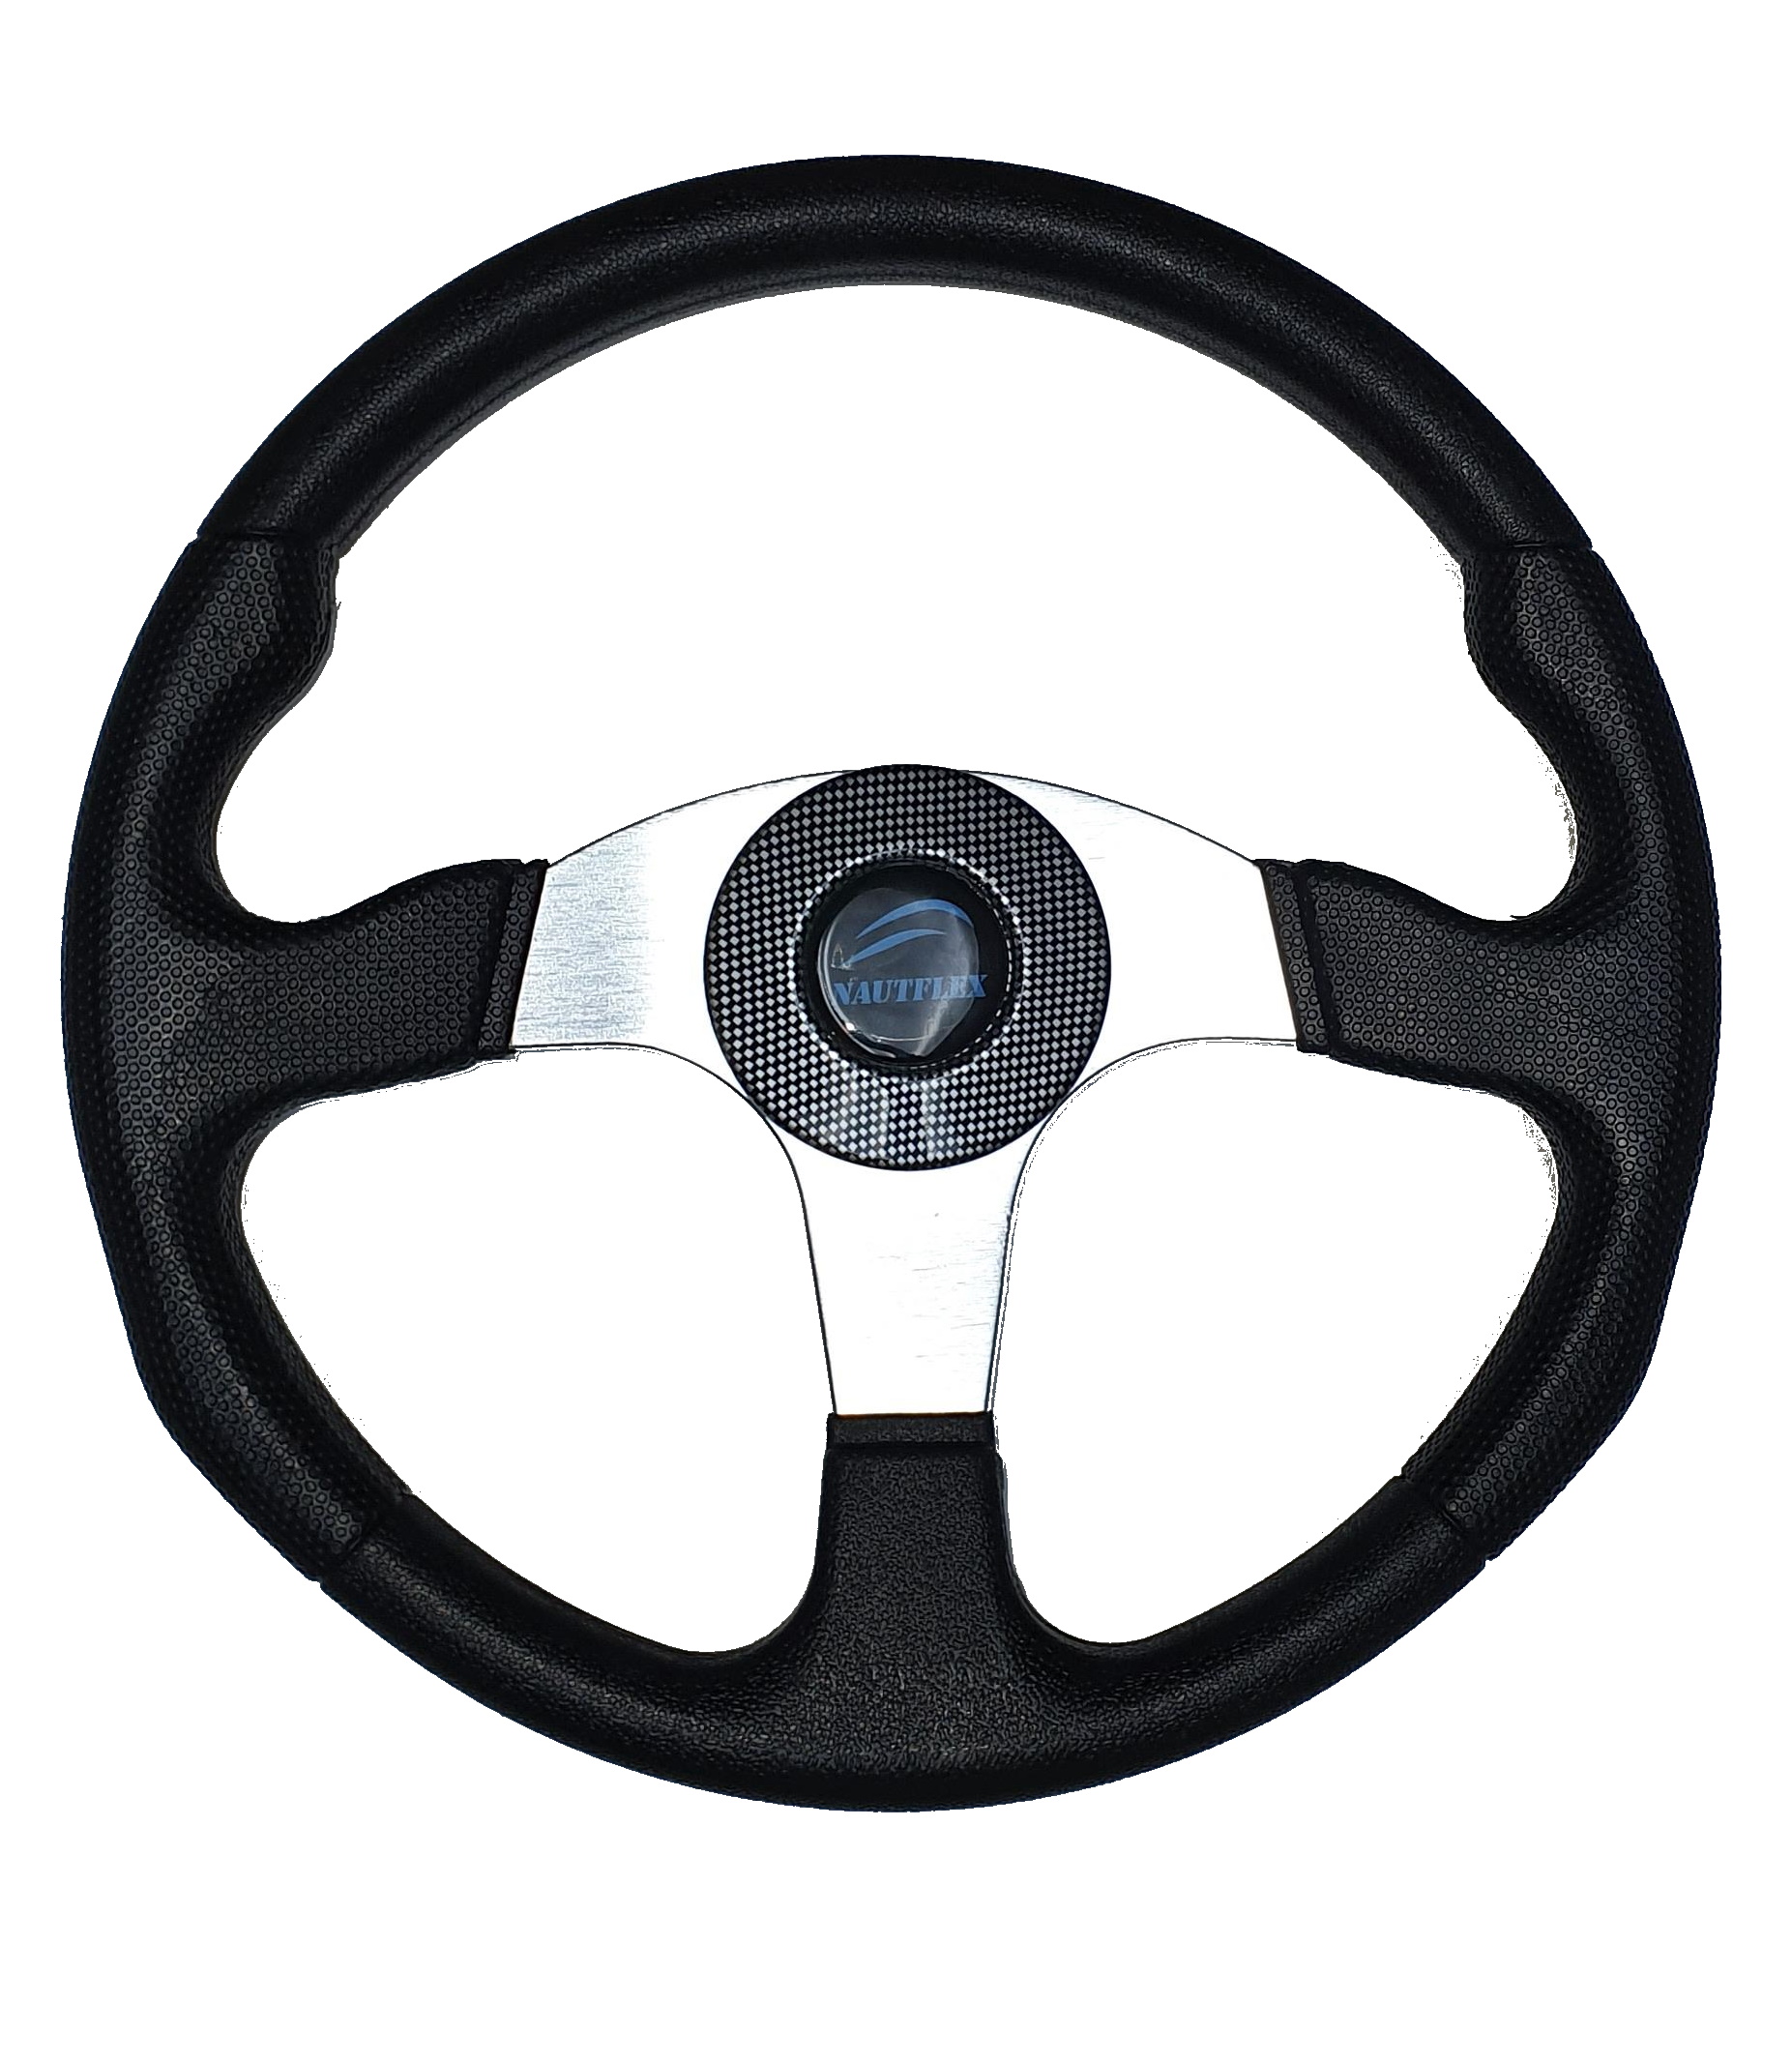 Steering wheel - Maxtek 350mm